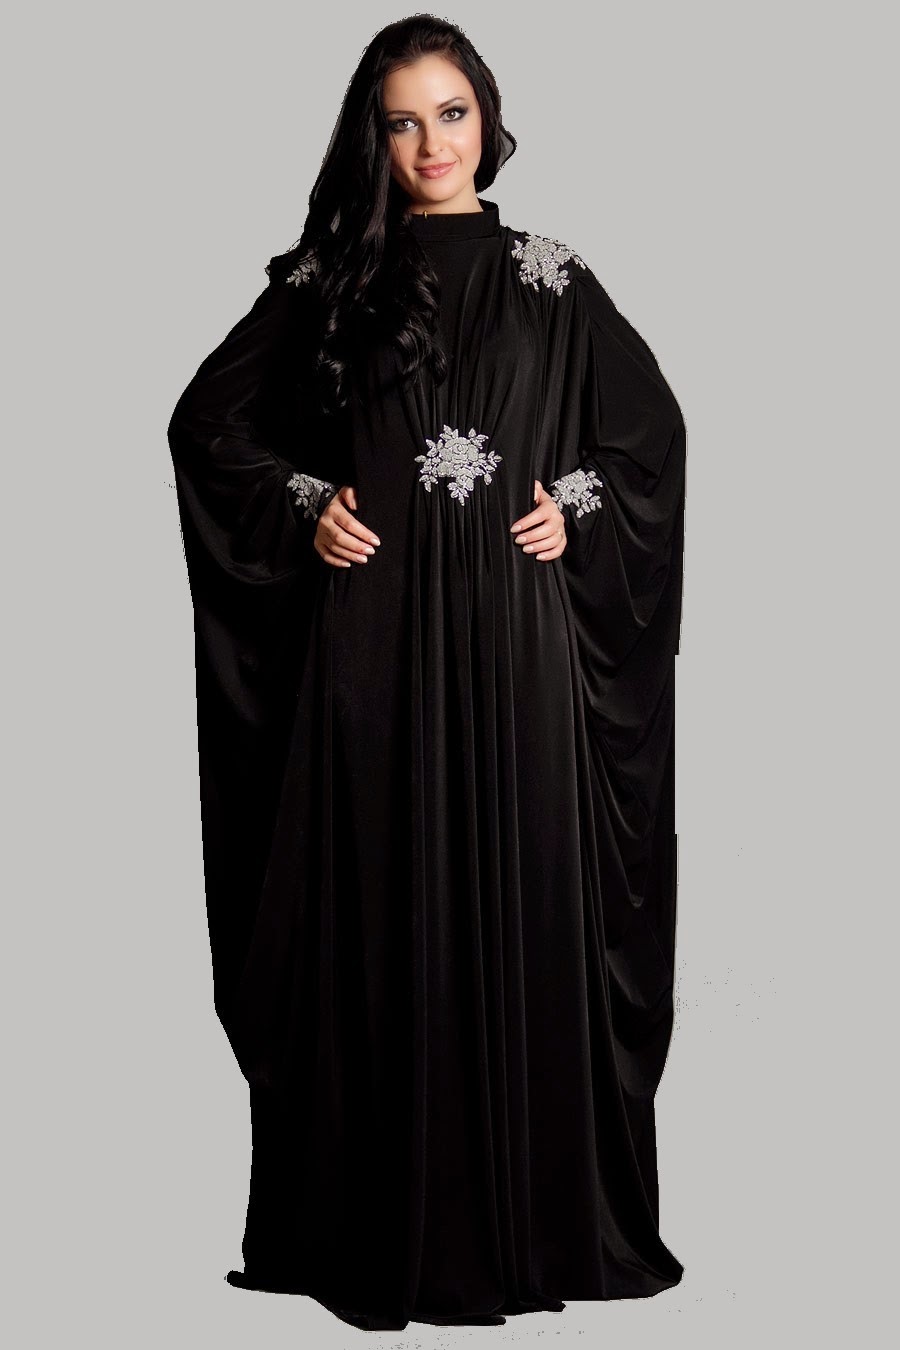 Koleksi Busana Muslim Kaftan Abaya Untuk Wanita Gemuk 